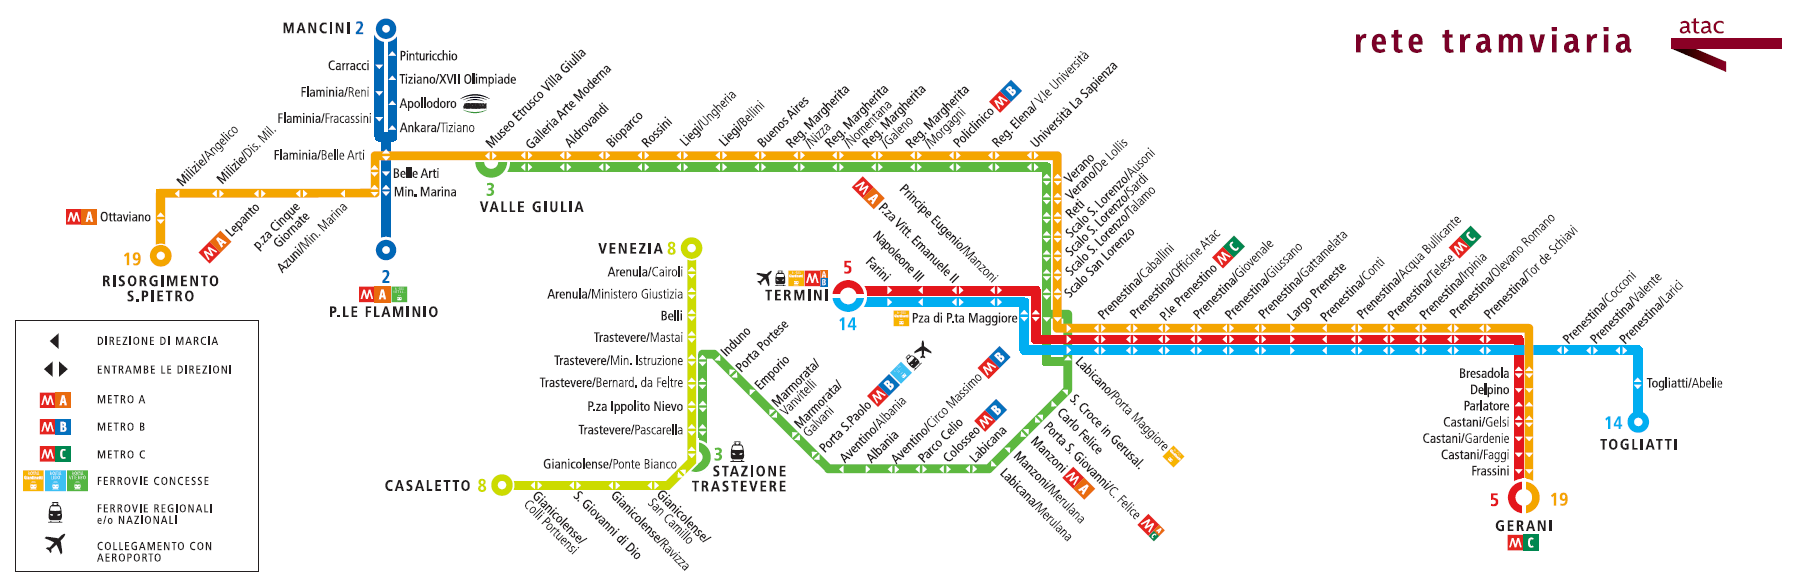 Mappa delle Linee Tranviarie di Roma